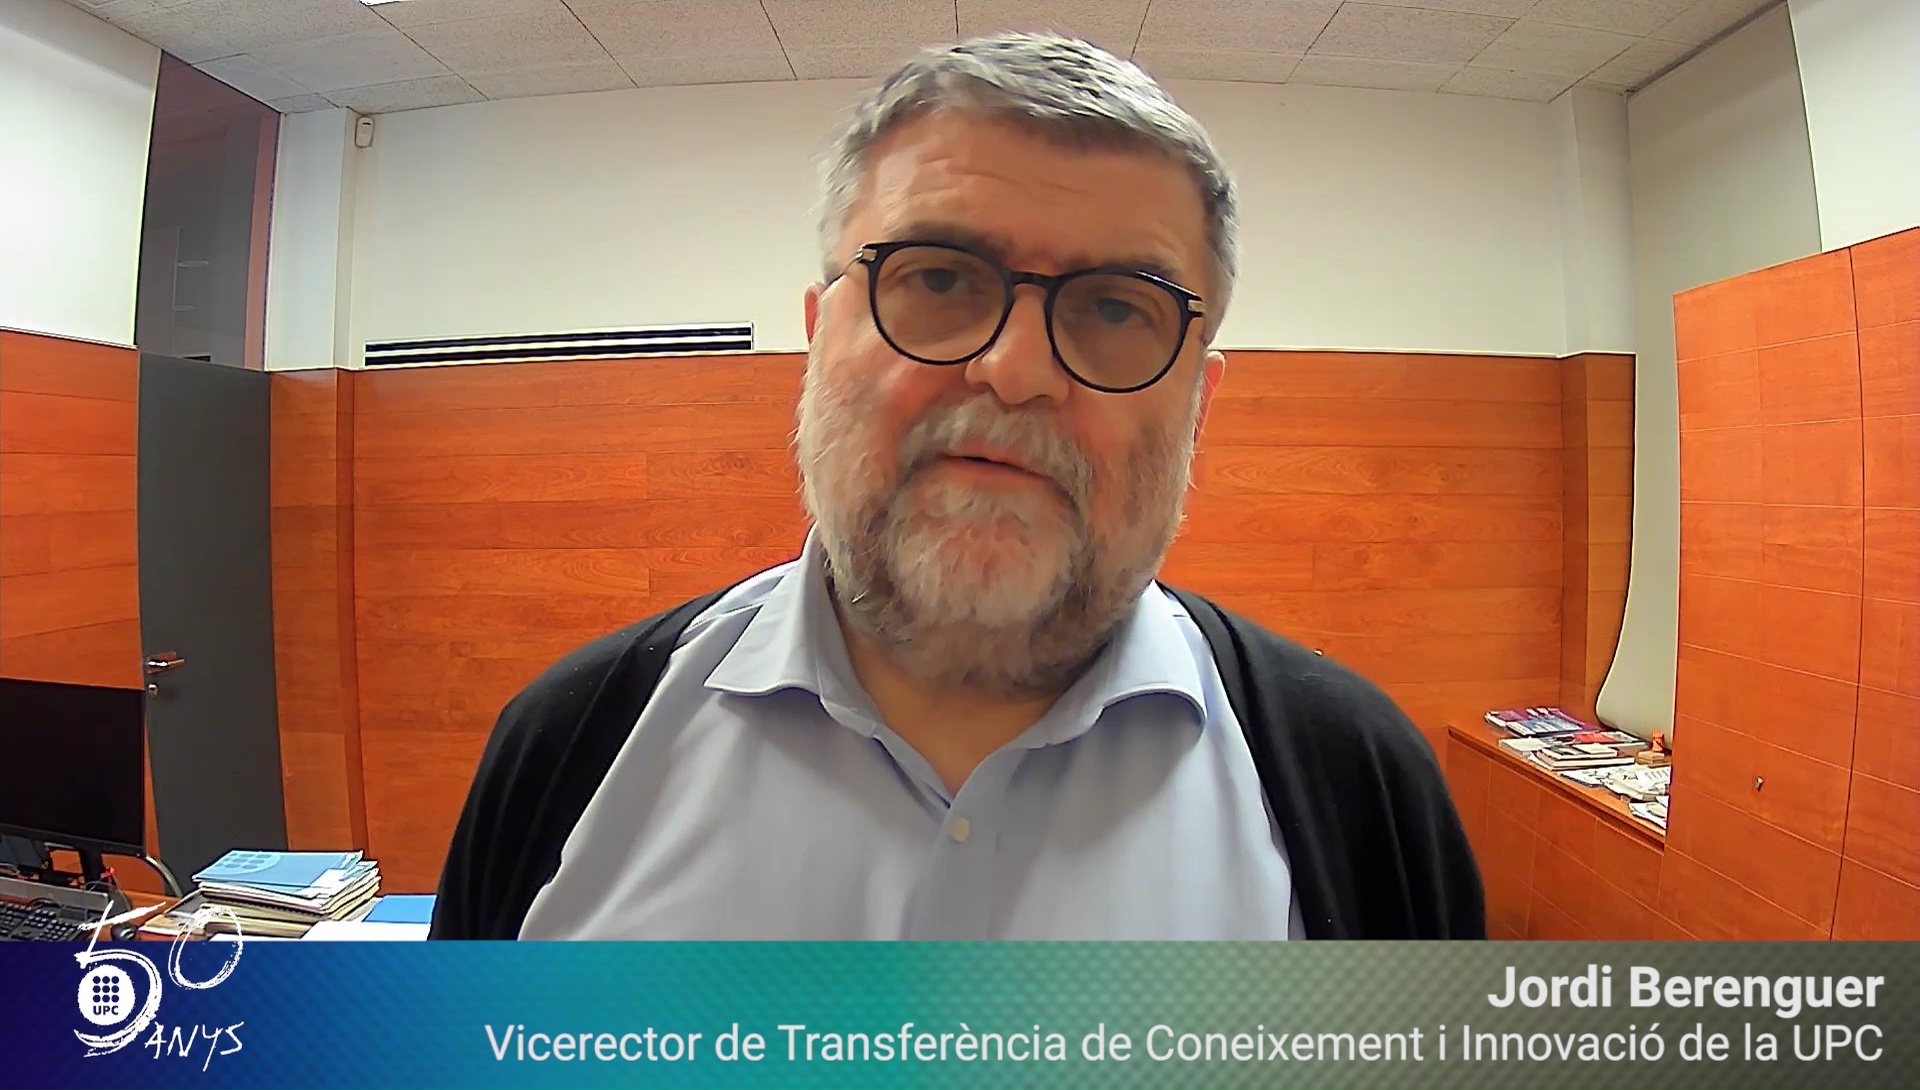 Jordi Berenguer, vicerector de Transferència de Coneixement i Innovació, felicita els #50anysUPC